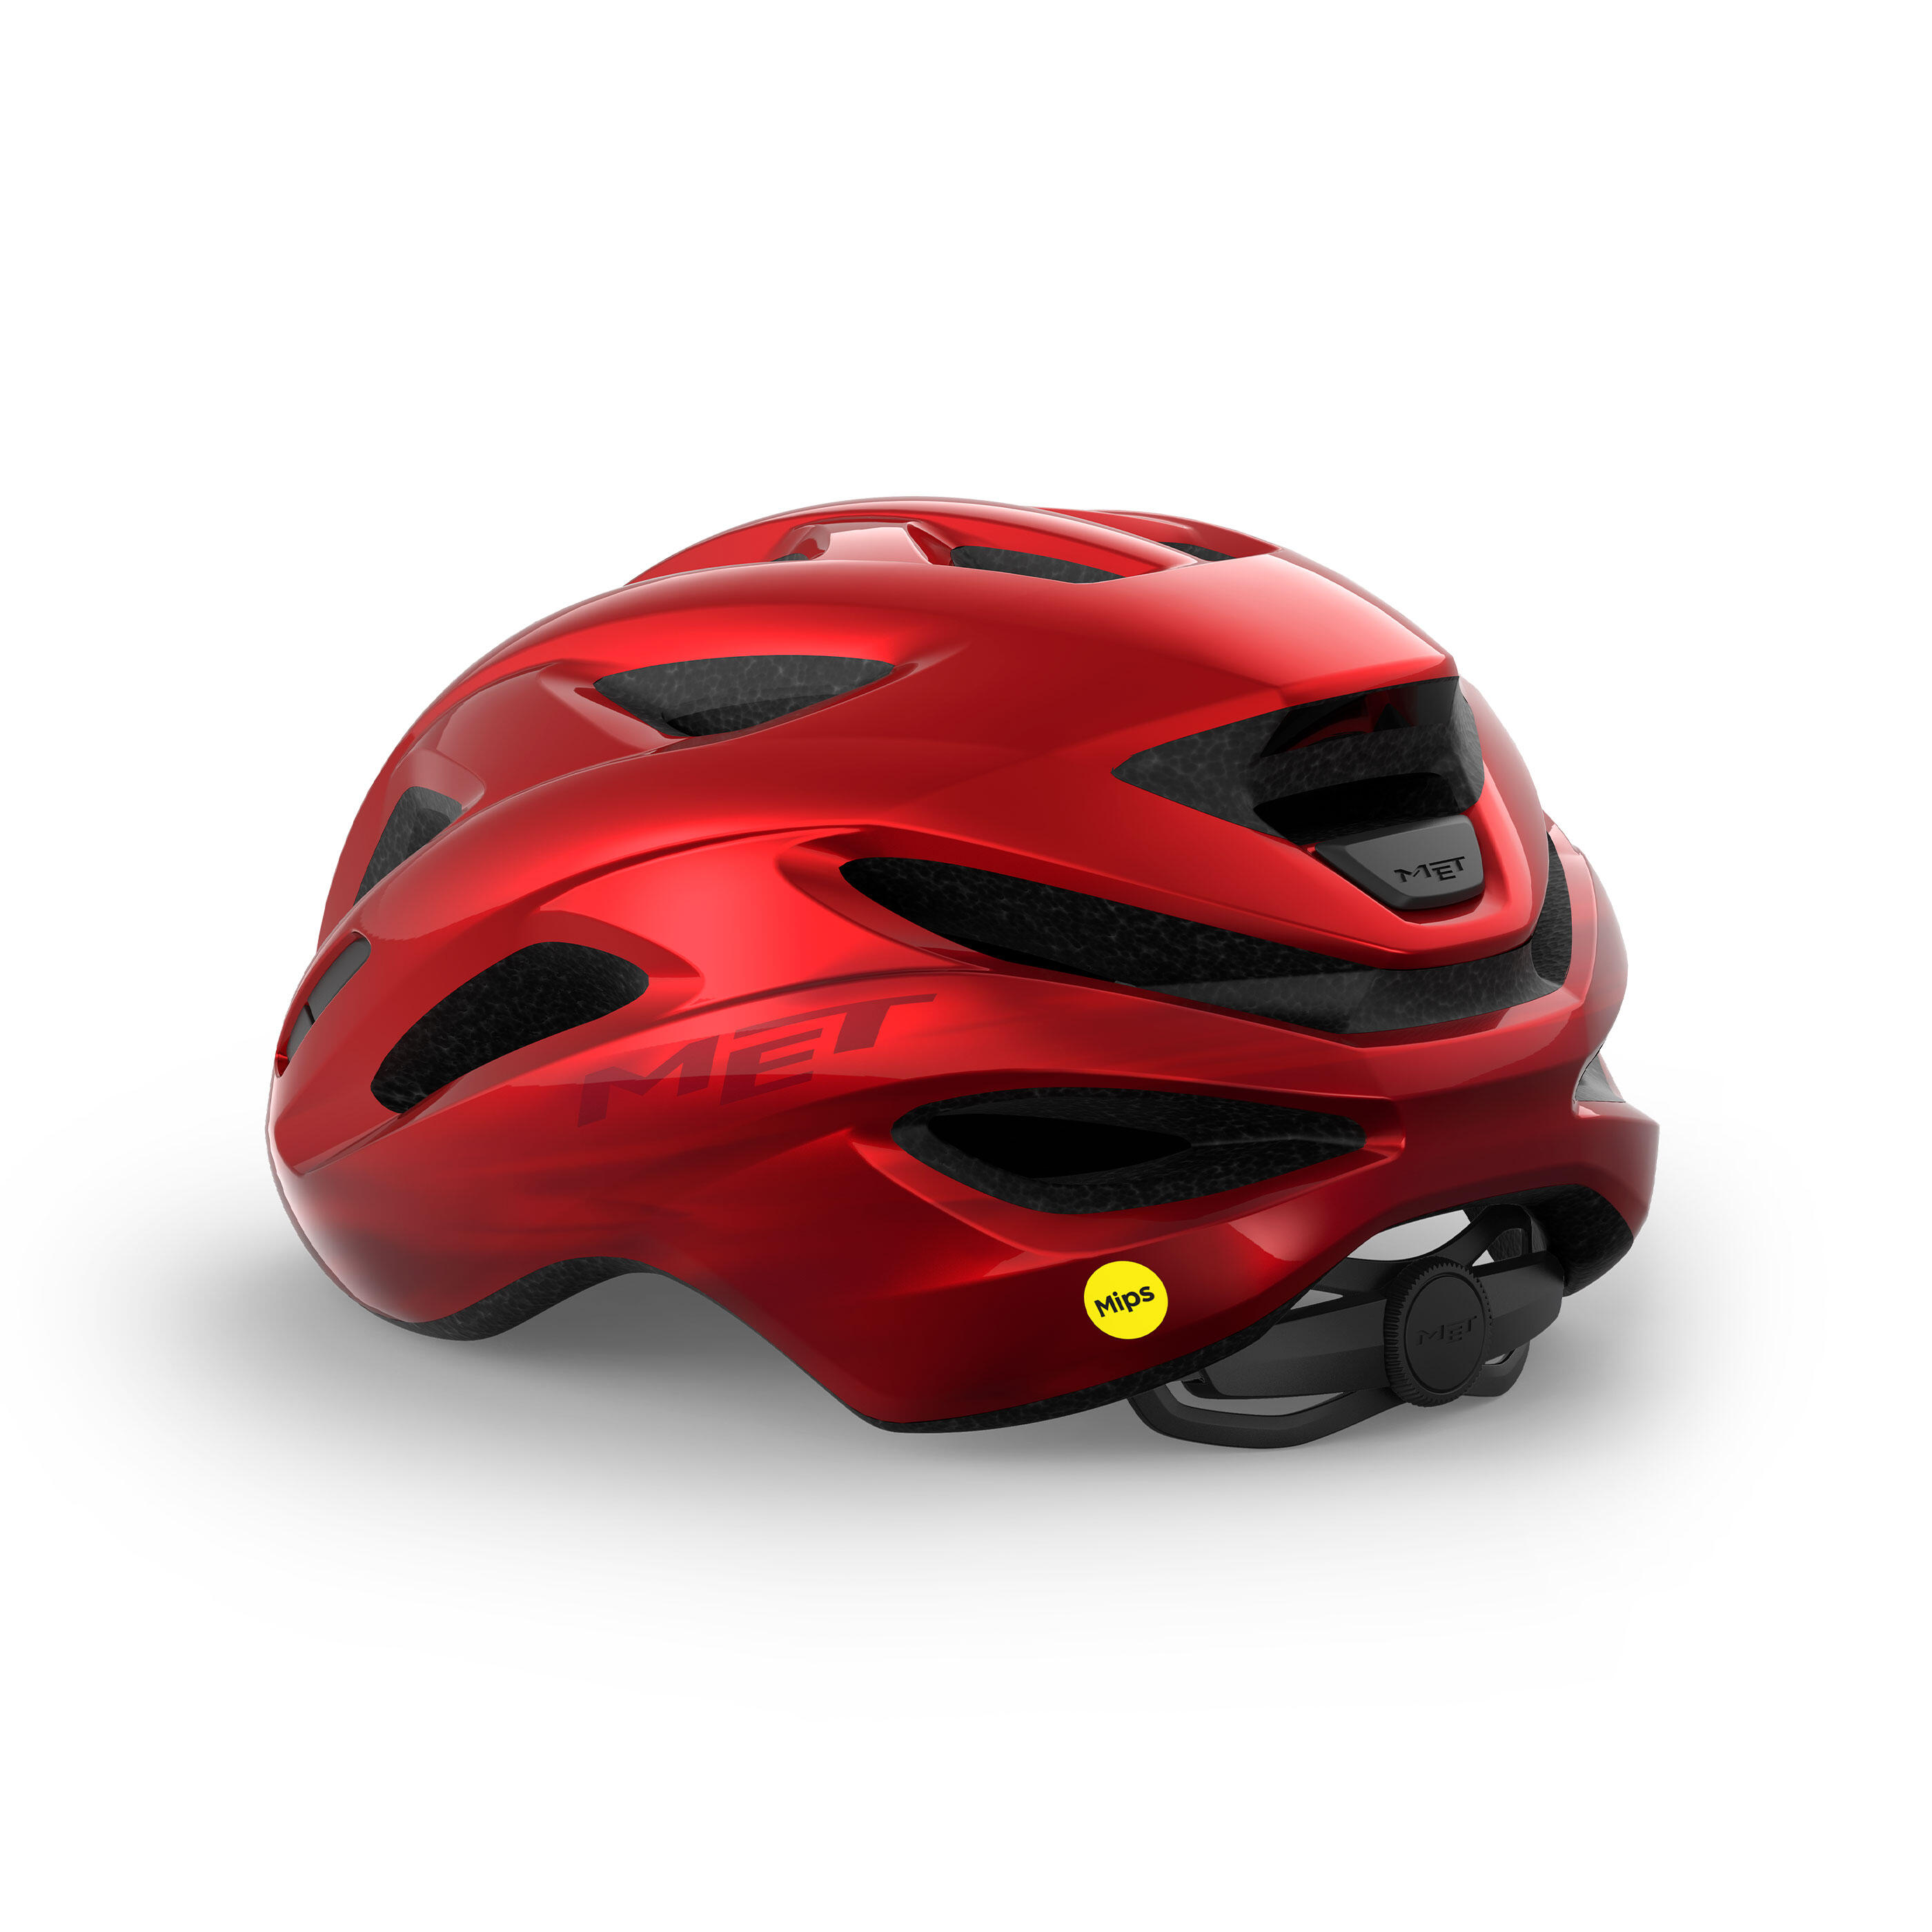 MET IDOLO MIPS Red Metallic UN Road Bike Helmet 2/6